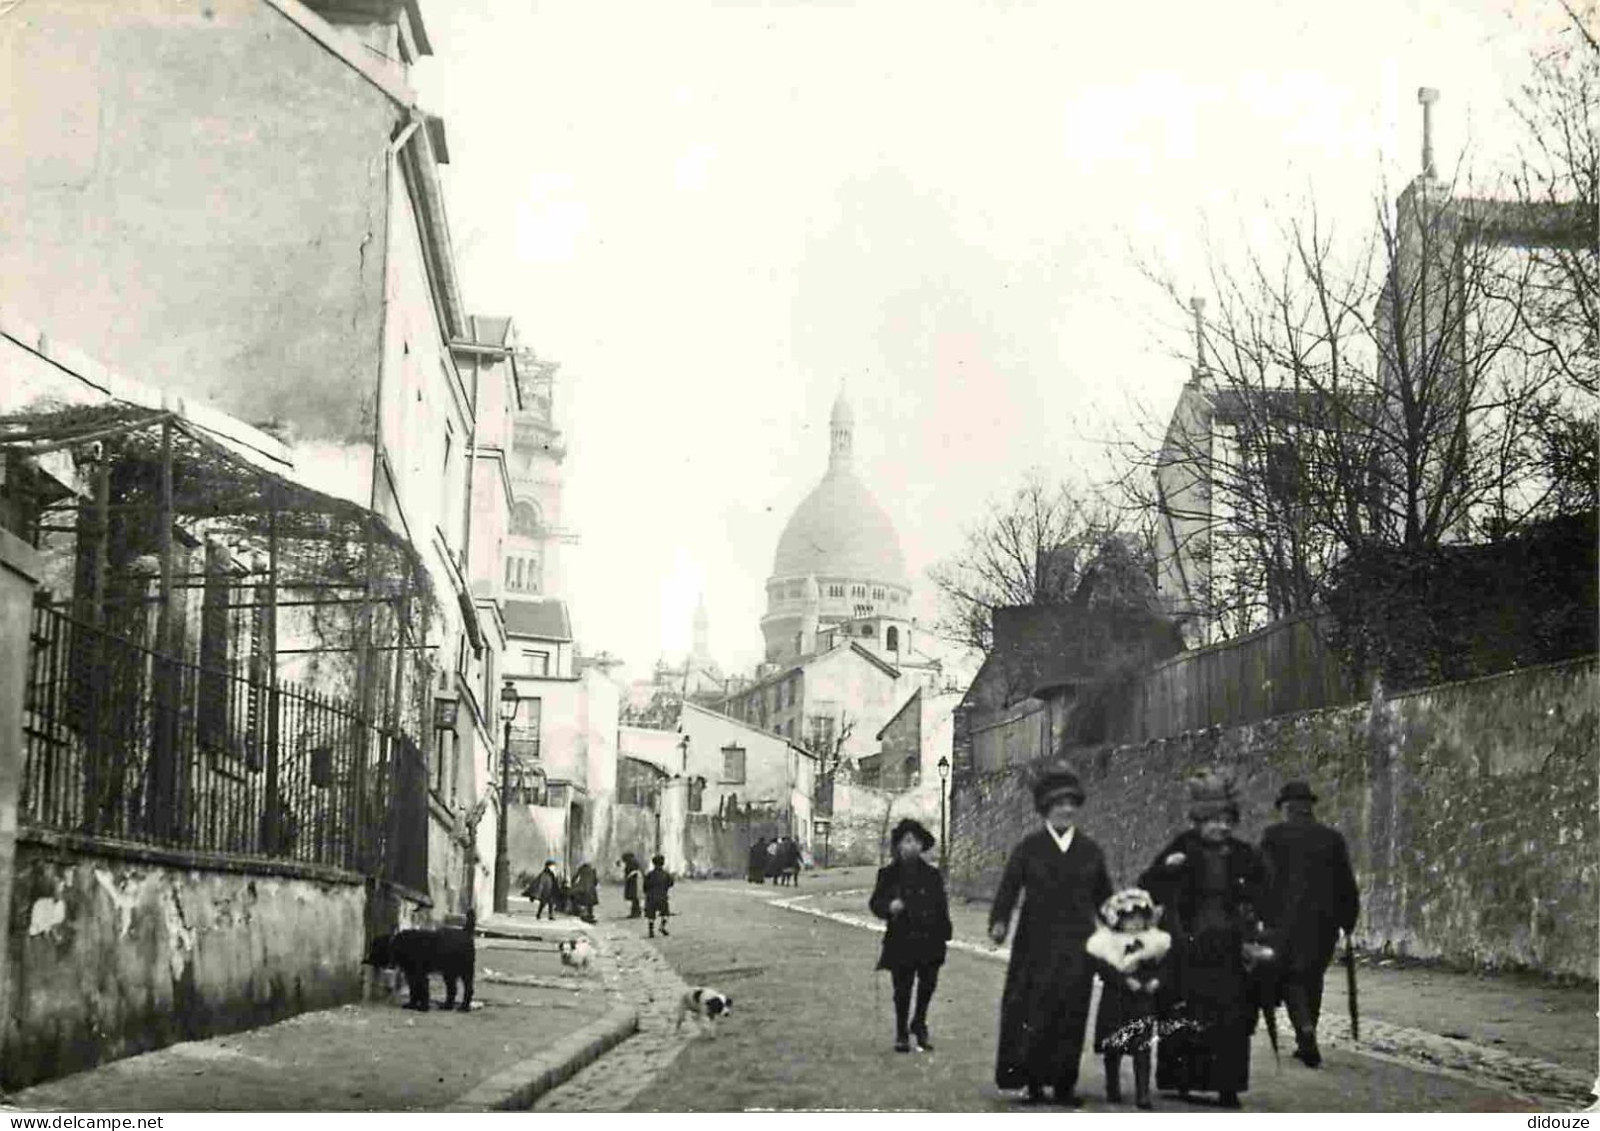 Reproduction CPA - 75 Paris - Promenade Dominicale Rue De L'Abreuvoir à Montmartre - Paris 1900 - 59 - CPM - Carte Neuve - Non Classés